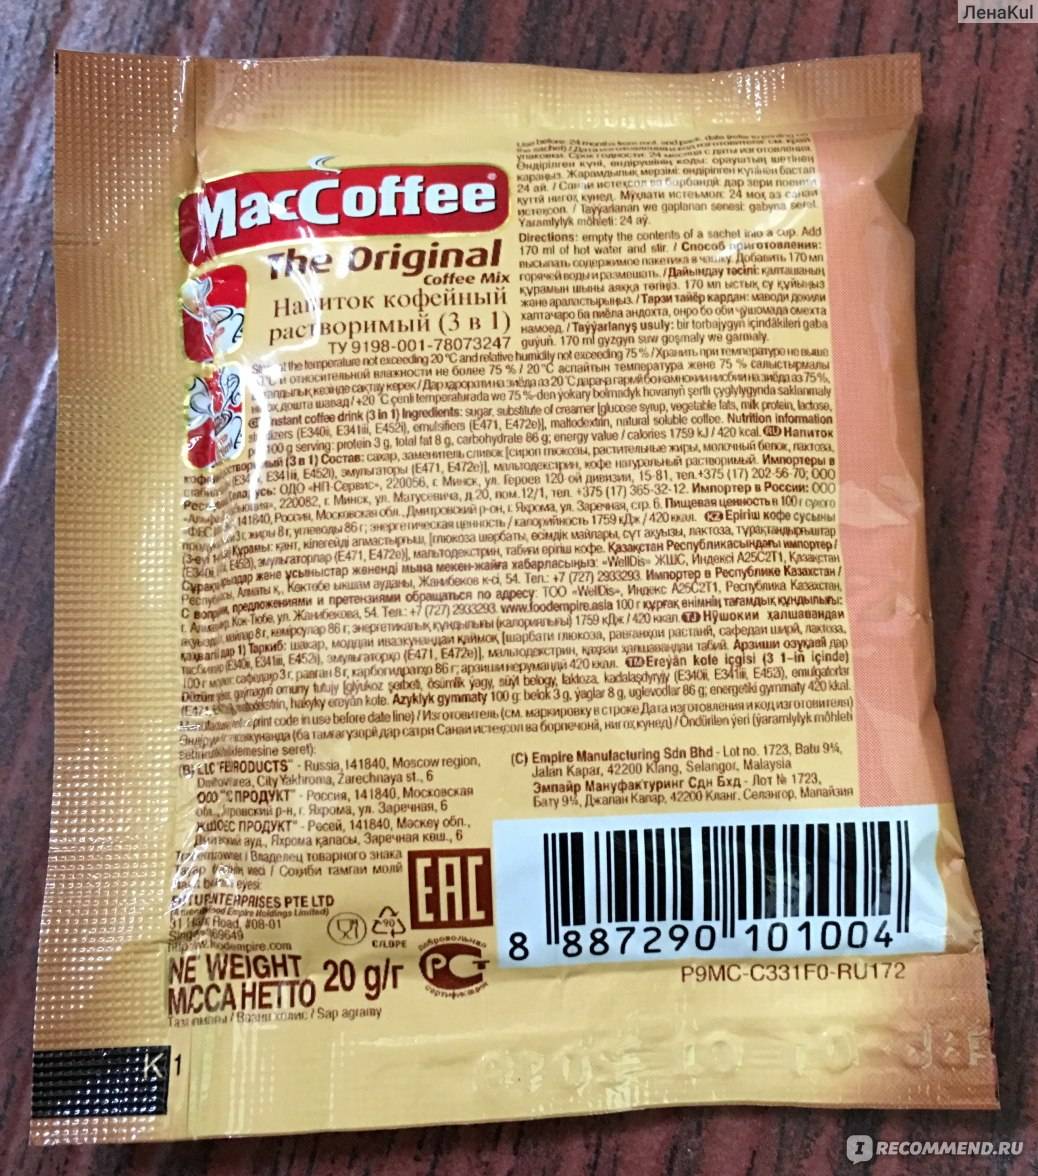 Действительно ли в кофе 3 в 1 натуральные ингредиенты?